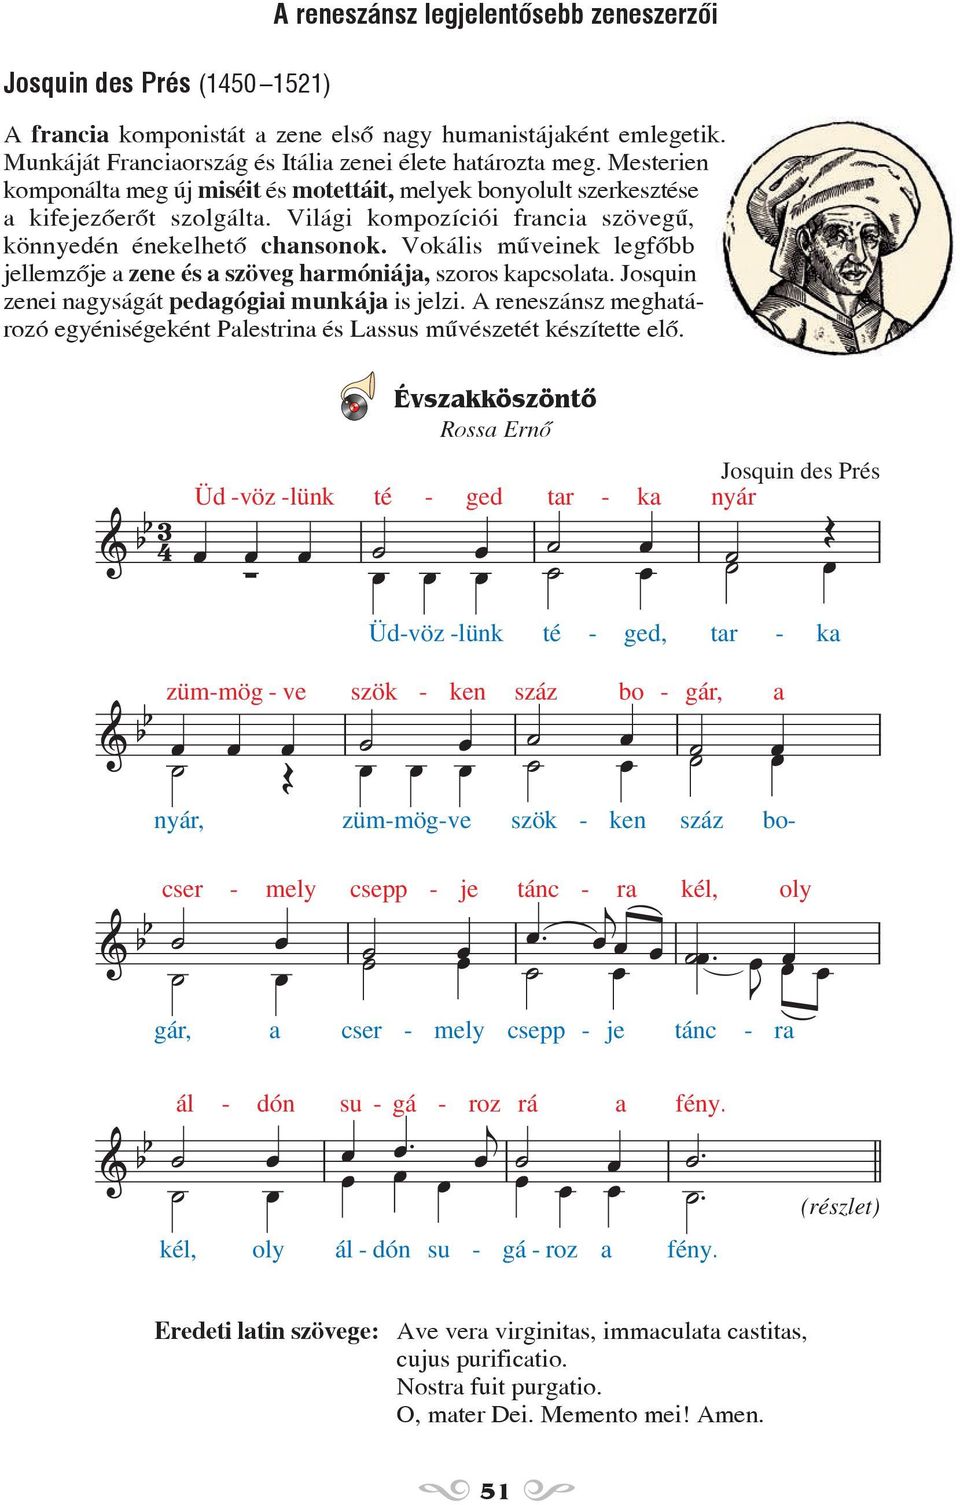 Vokális mûveinek legfõbb jellemzõje a zene és a szöveg harmóniája, szoros kapcsolata. Josquin zenei nagyságát pedagógiai munkája is jelzi.